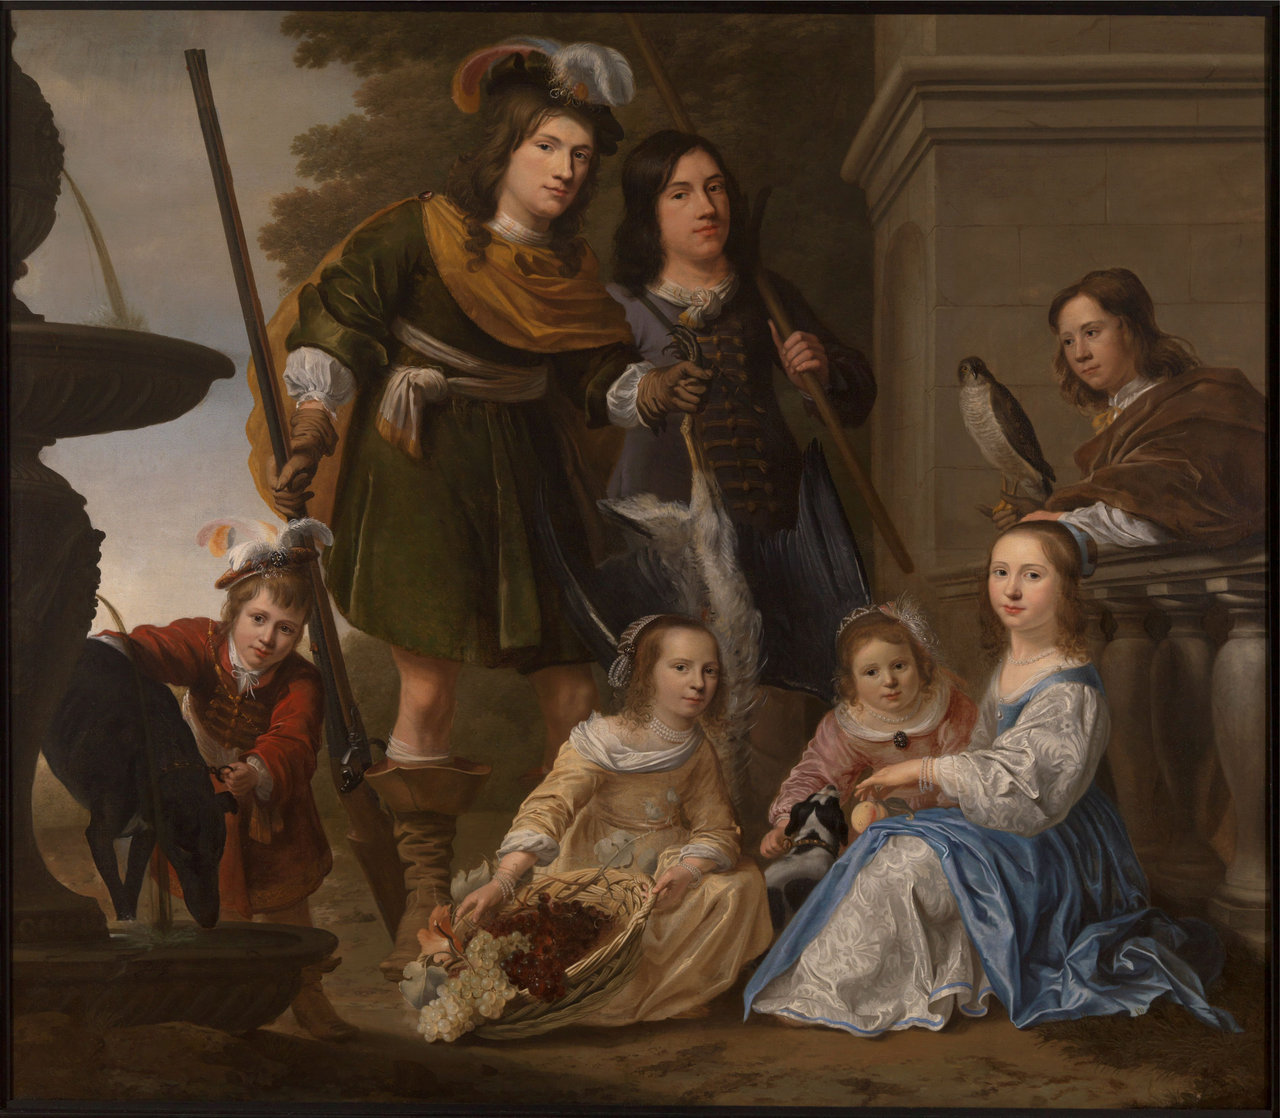 Op dit schilderij van Jacob Willemsz Delff uit circa 1650 staan de zeven kinderen uit  drie huwelijken van de Brielse admiraal Maarten Tromp. De middelste jongen is Cornelis, de enige zoon die ook admiraal zou worden.